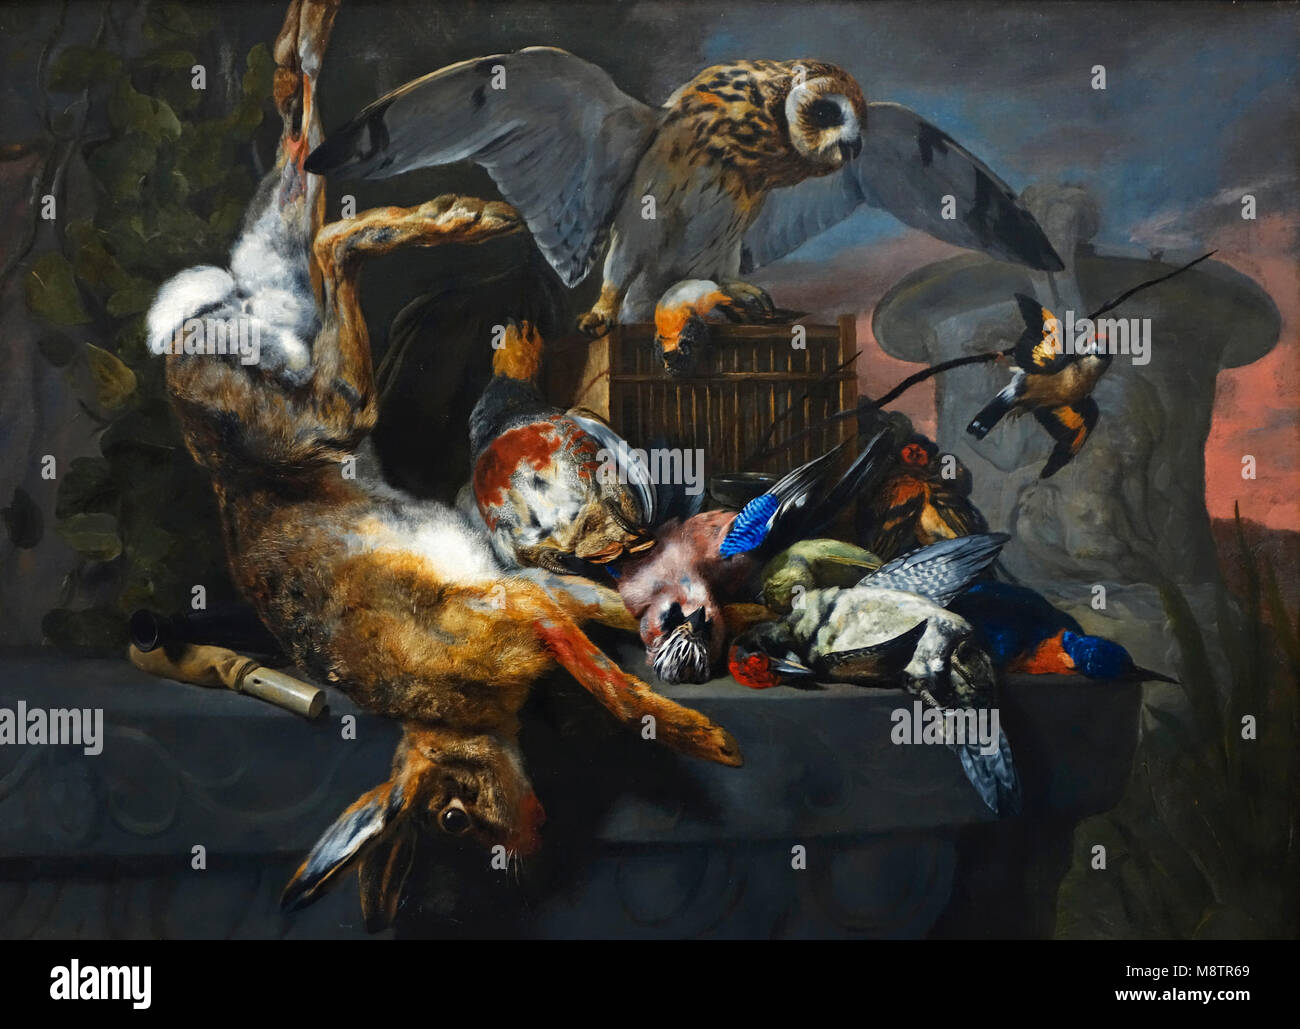 Nature morte avec un hibou et un trophée de chasse, 17e siècle huile sur toile toile de peintre flamand Pieter Boel / Peeter Boel de l'École d'Anvers Banque D'Images